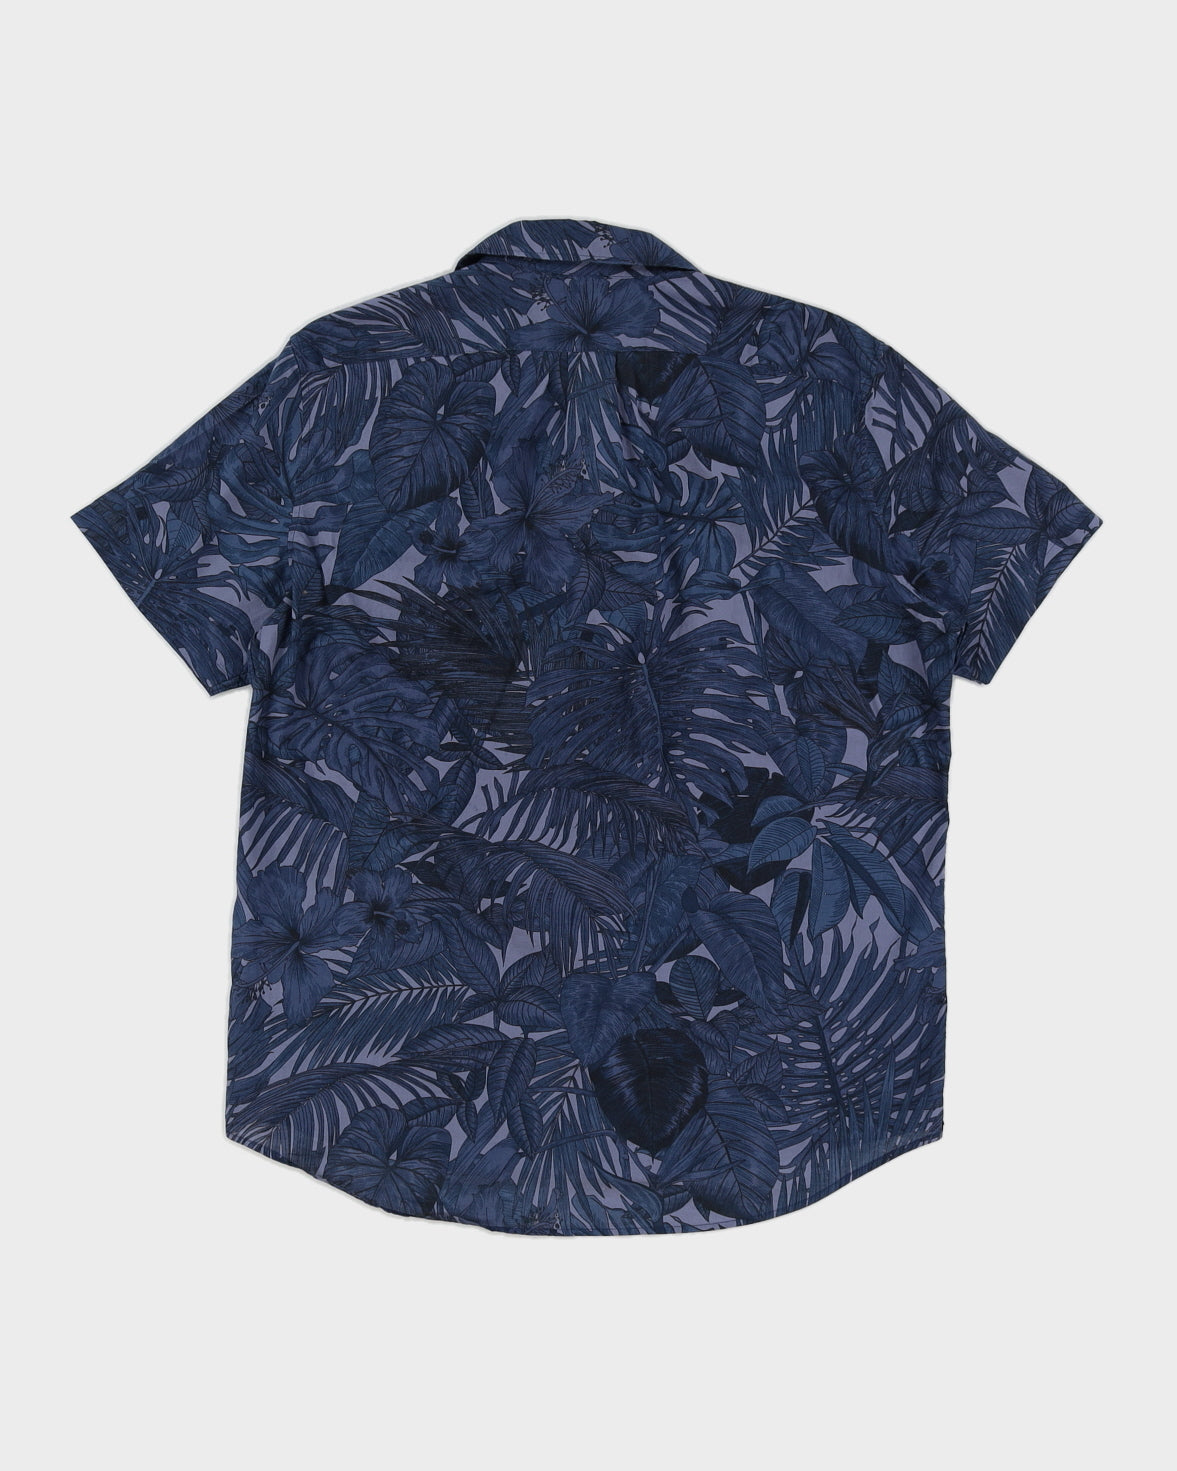 Blue Michael Kors Shirt - XL